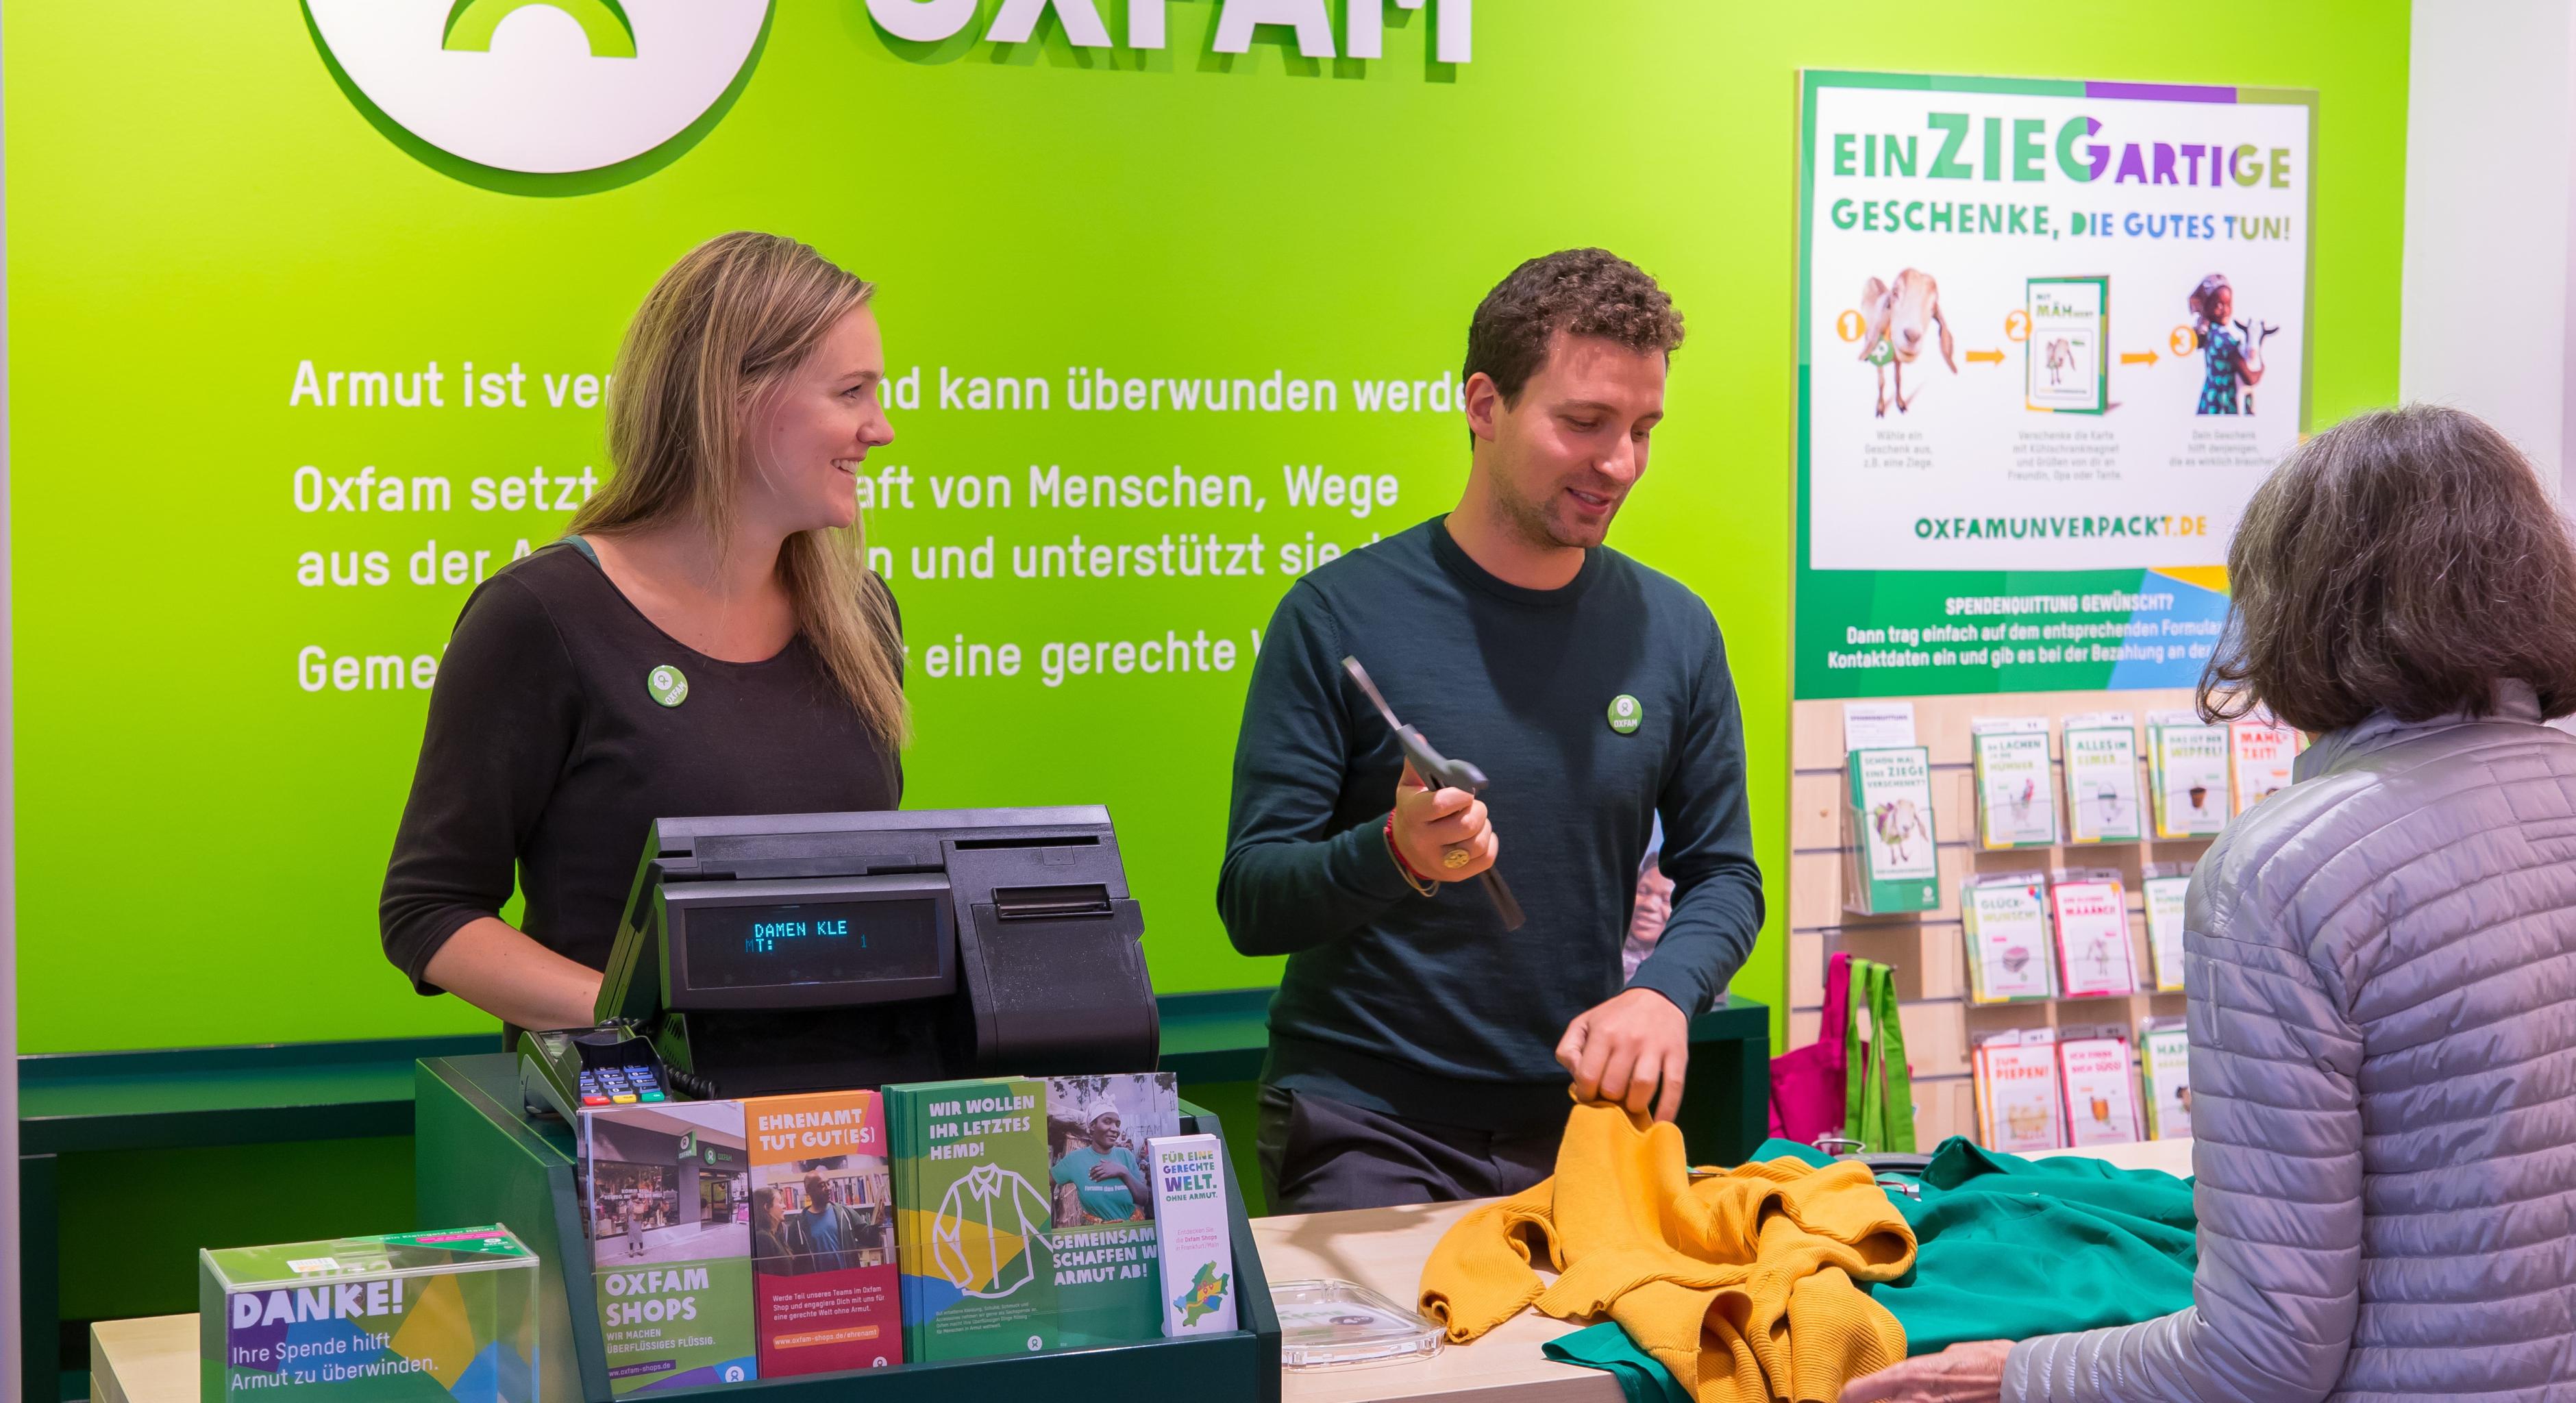 Zwei Ehrenamtliche stehen an einer Kasse in einem Oxfam-Shop und kassieren die Kleidung einer Kundin ab